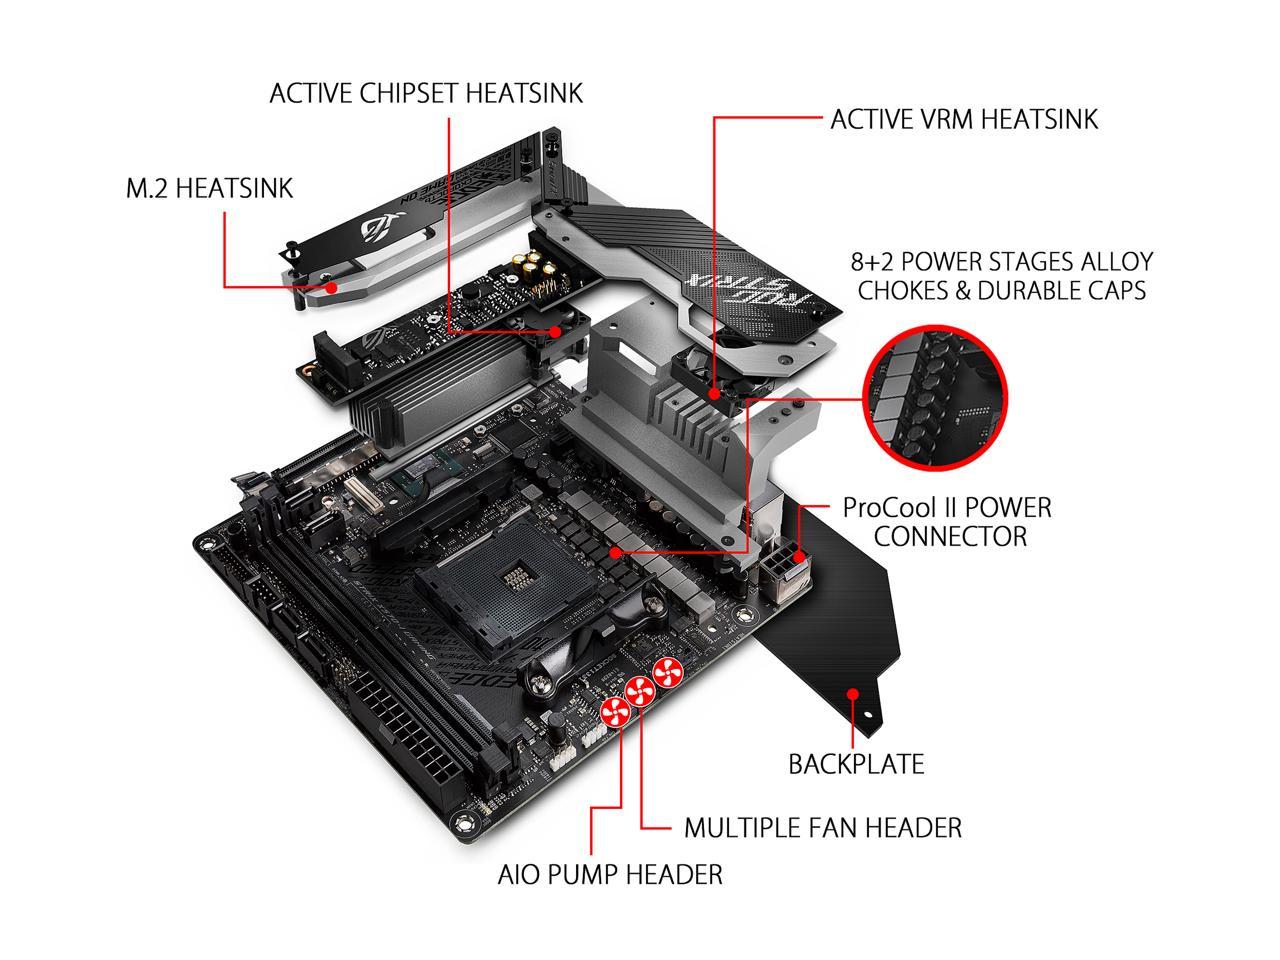 ASUS ROG Strix X570-I Gaming AM4 AMD X570 SATA 6Gb/s Mini ITX AMD Motherboard